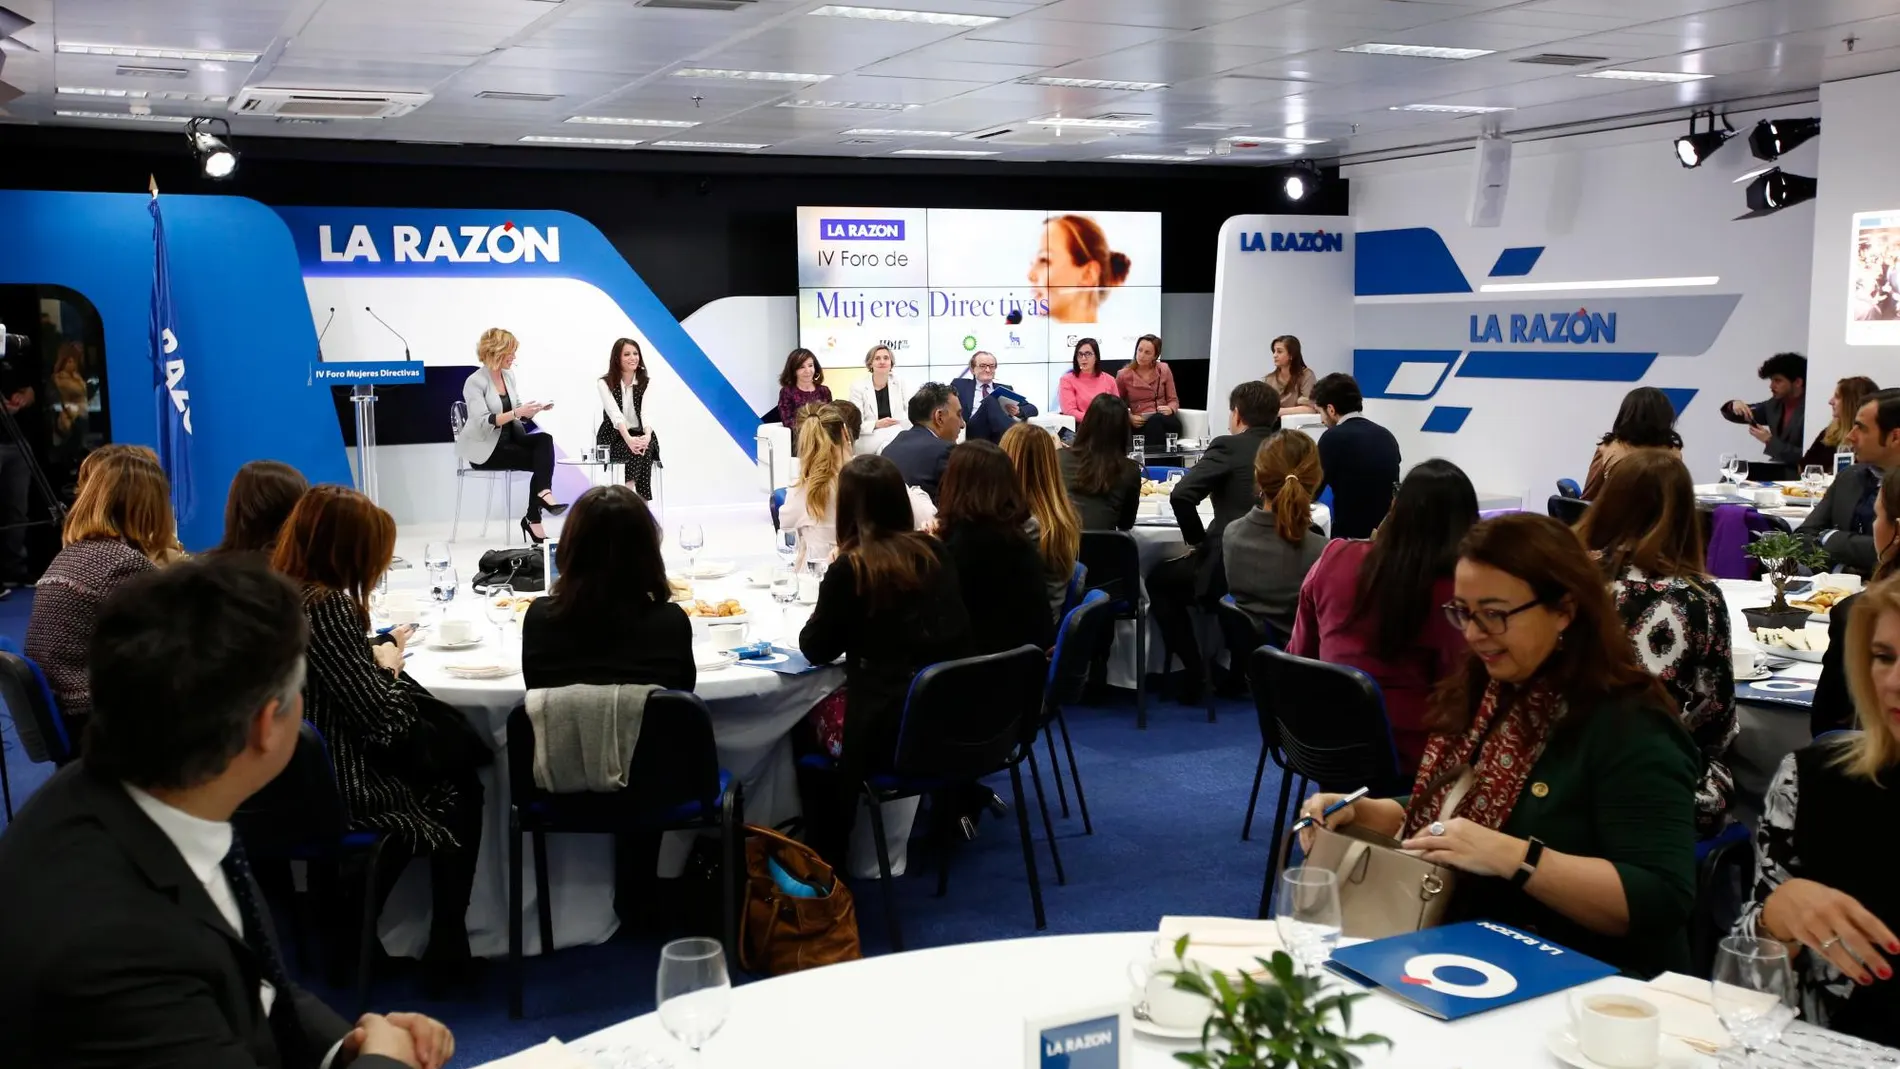 Imagen del IV Foro de Mujeres Directivas en LA RAZÓN. (Foto: Alberto R. Roldán)